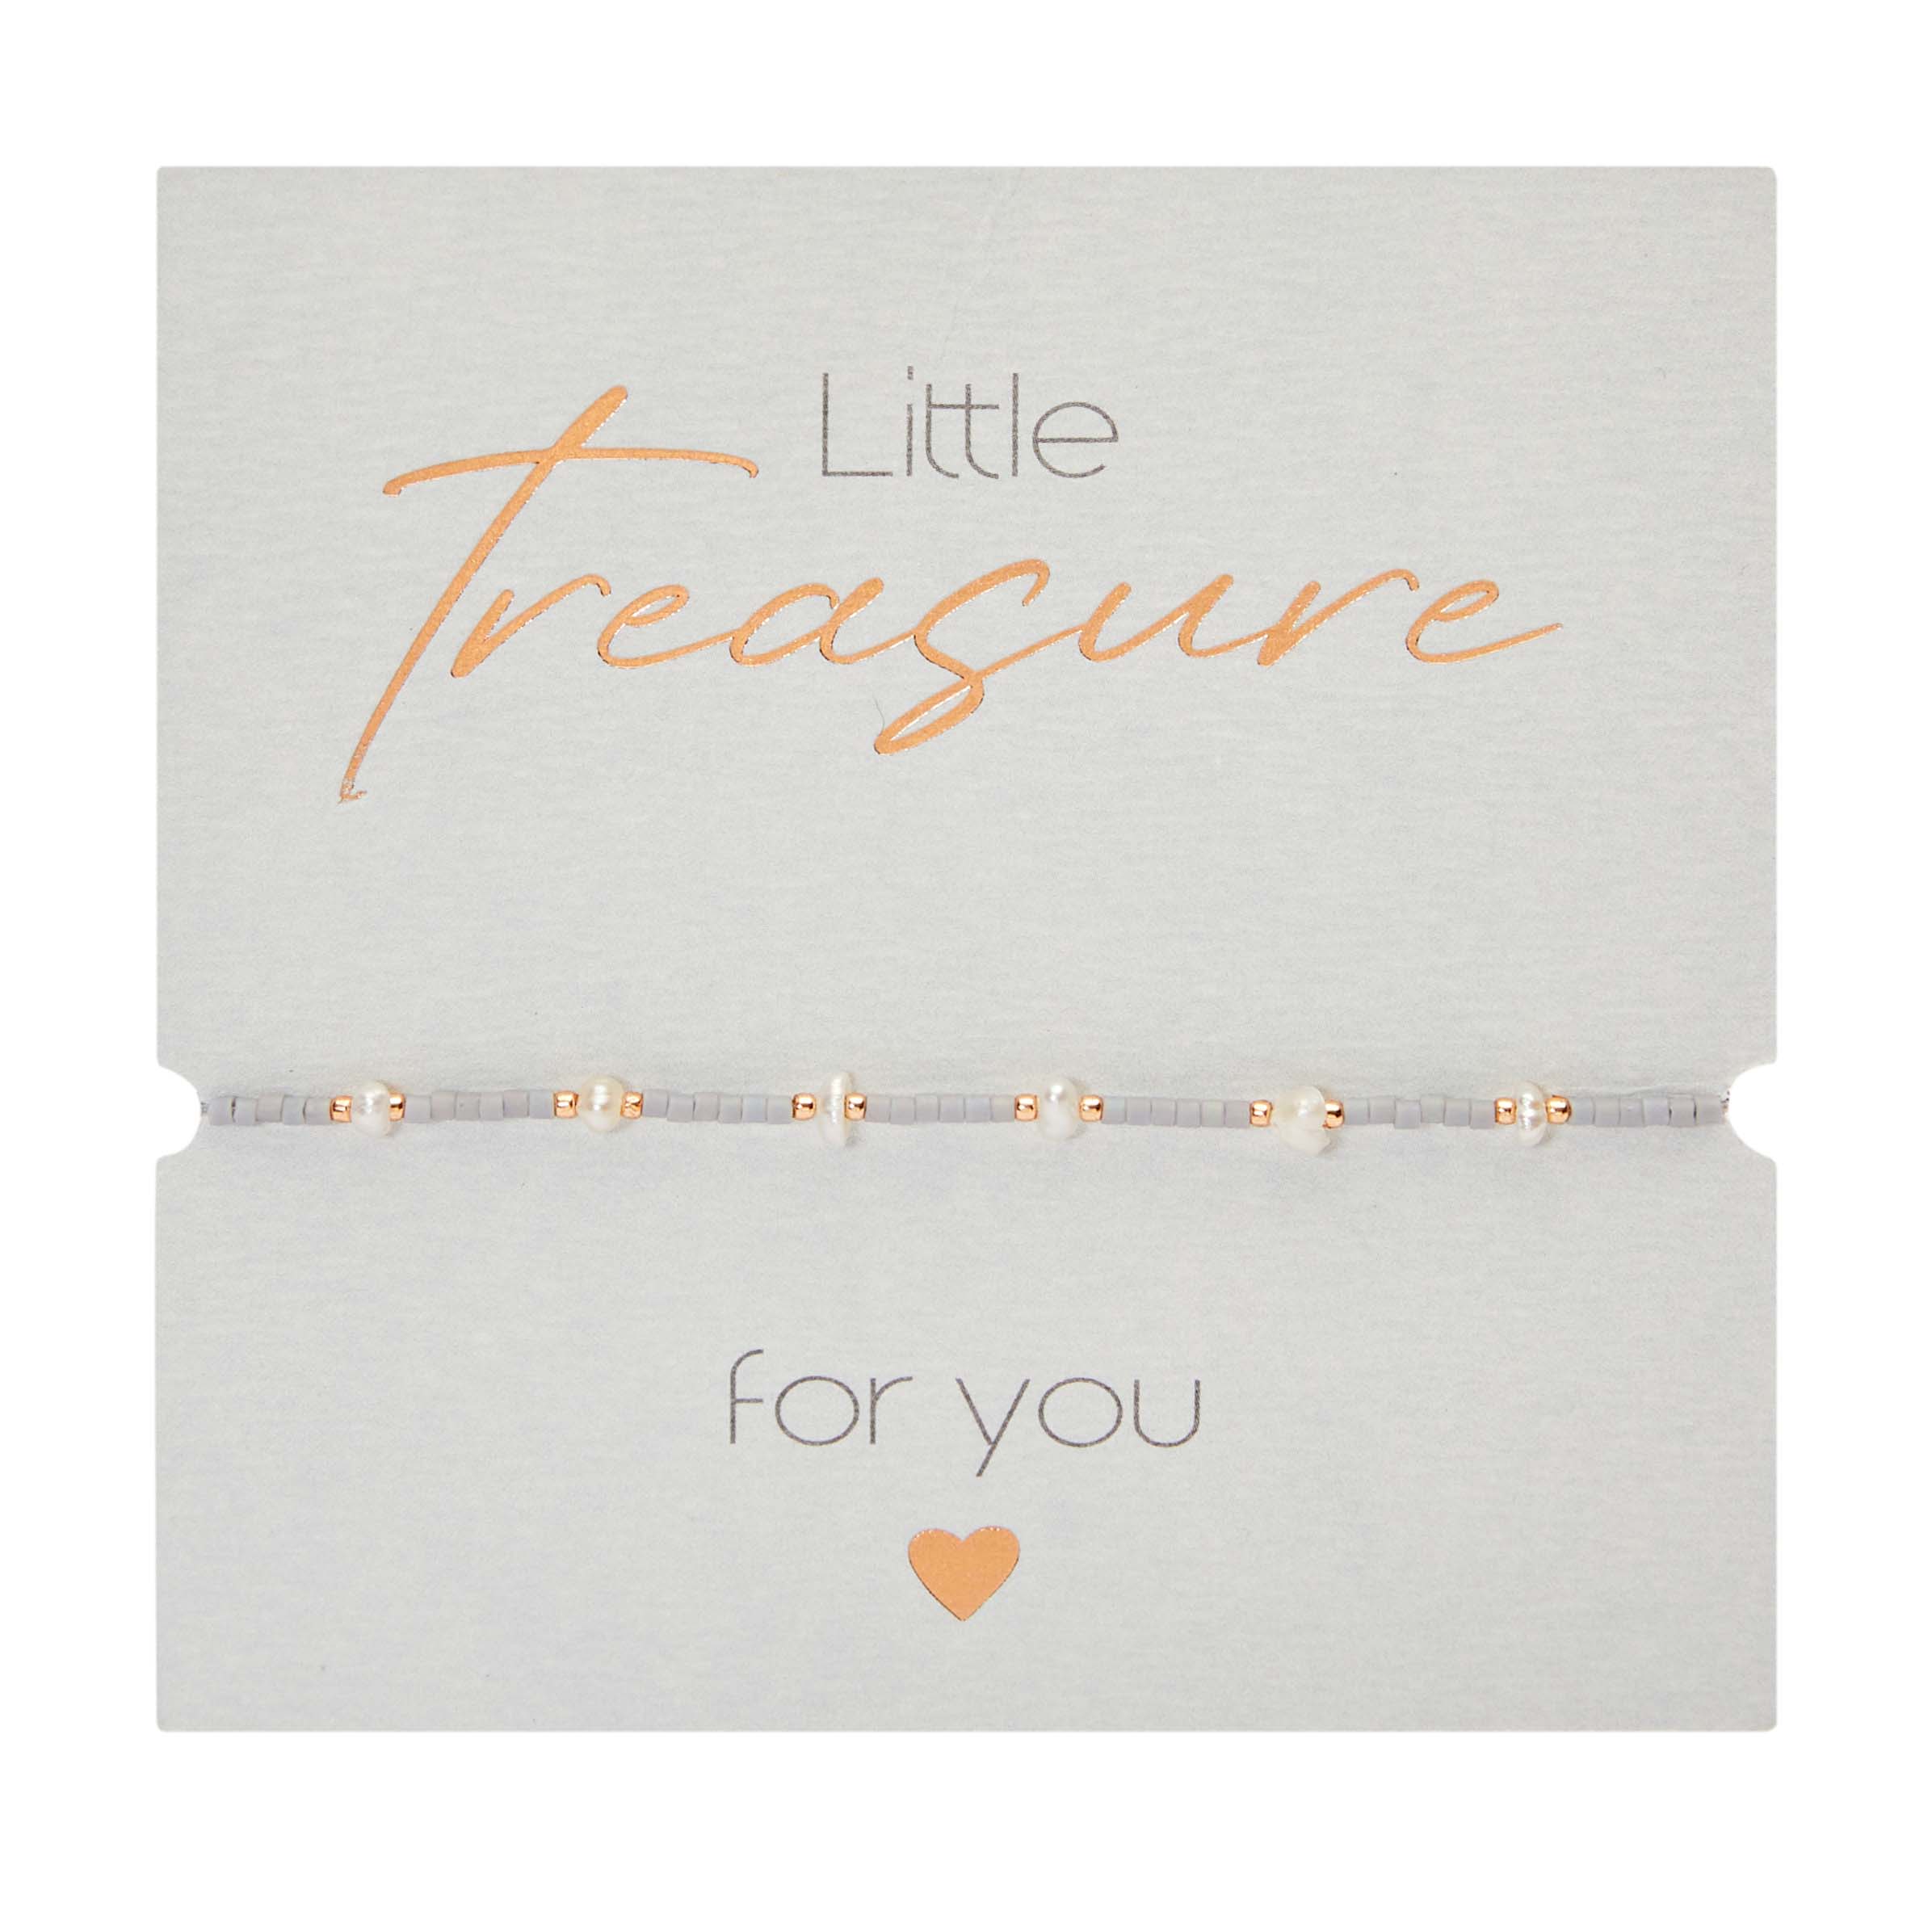 Display bracelets - "Little Treasure" 